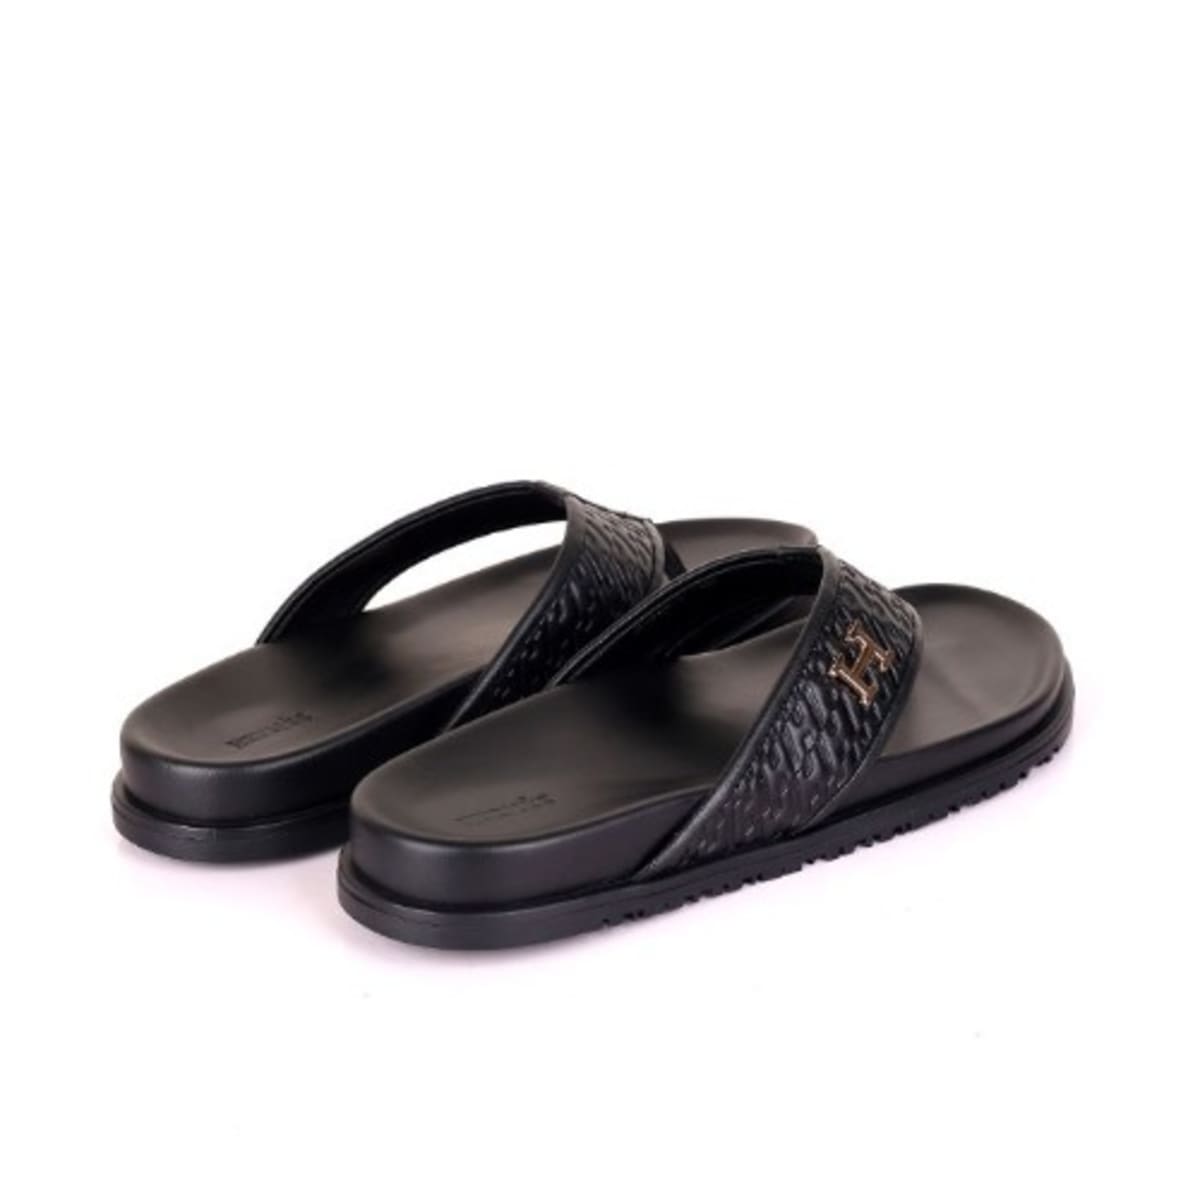 Buy Kraasa Footwear online - 285 products | FASHIOLA.in